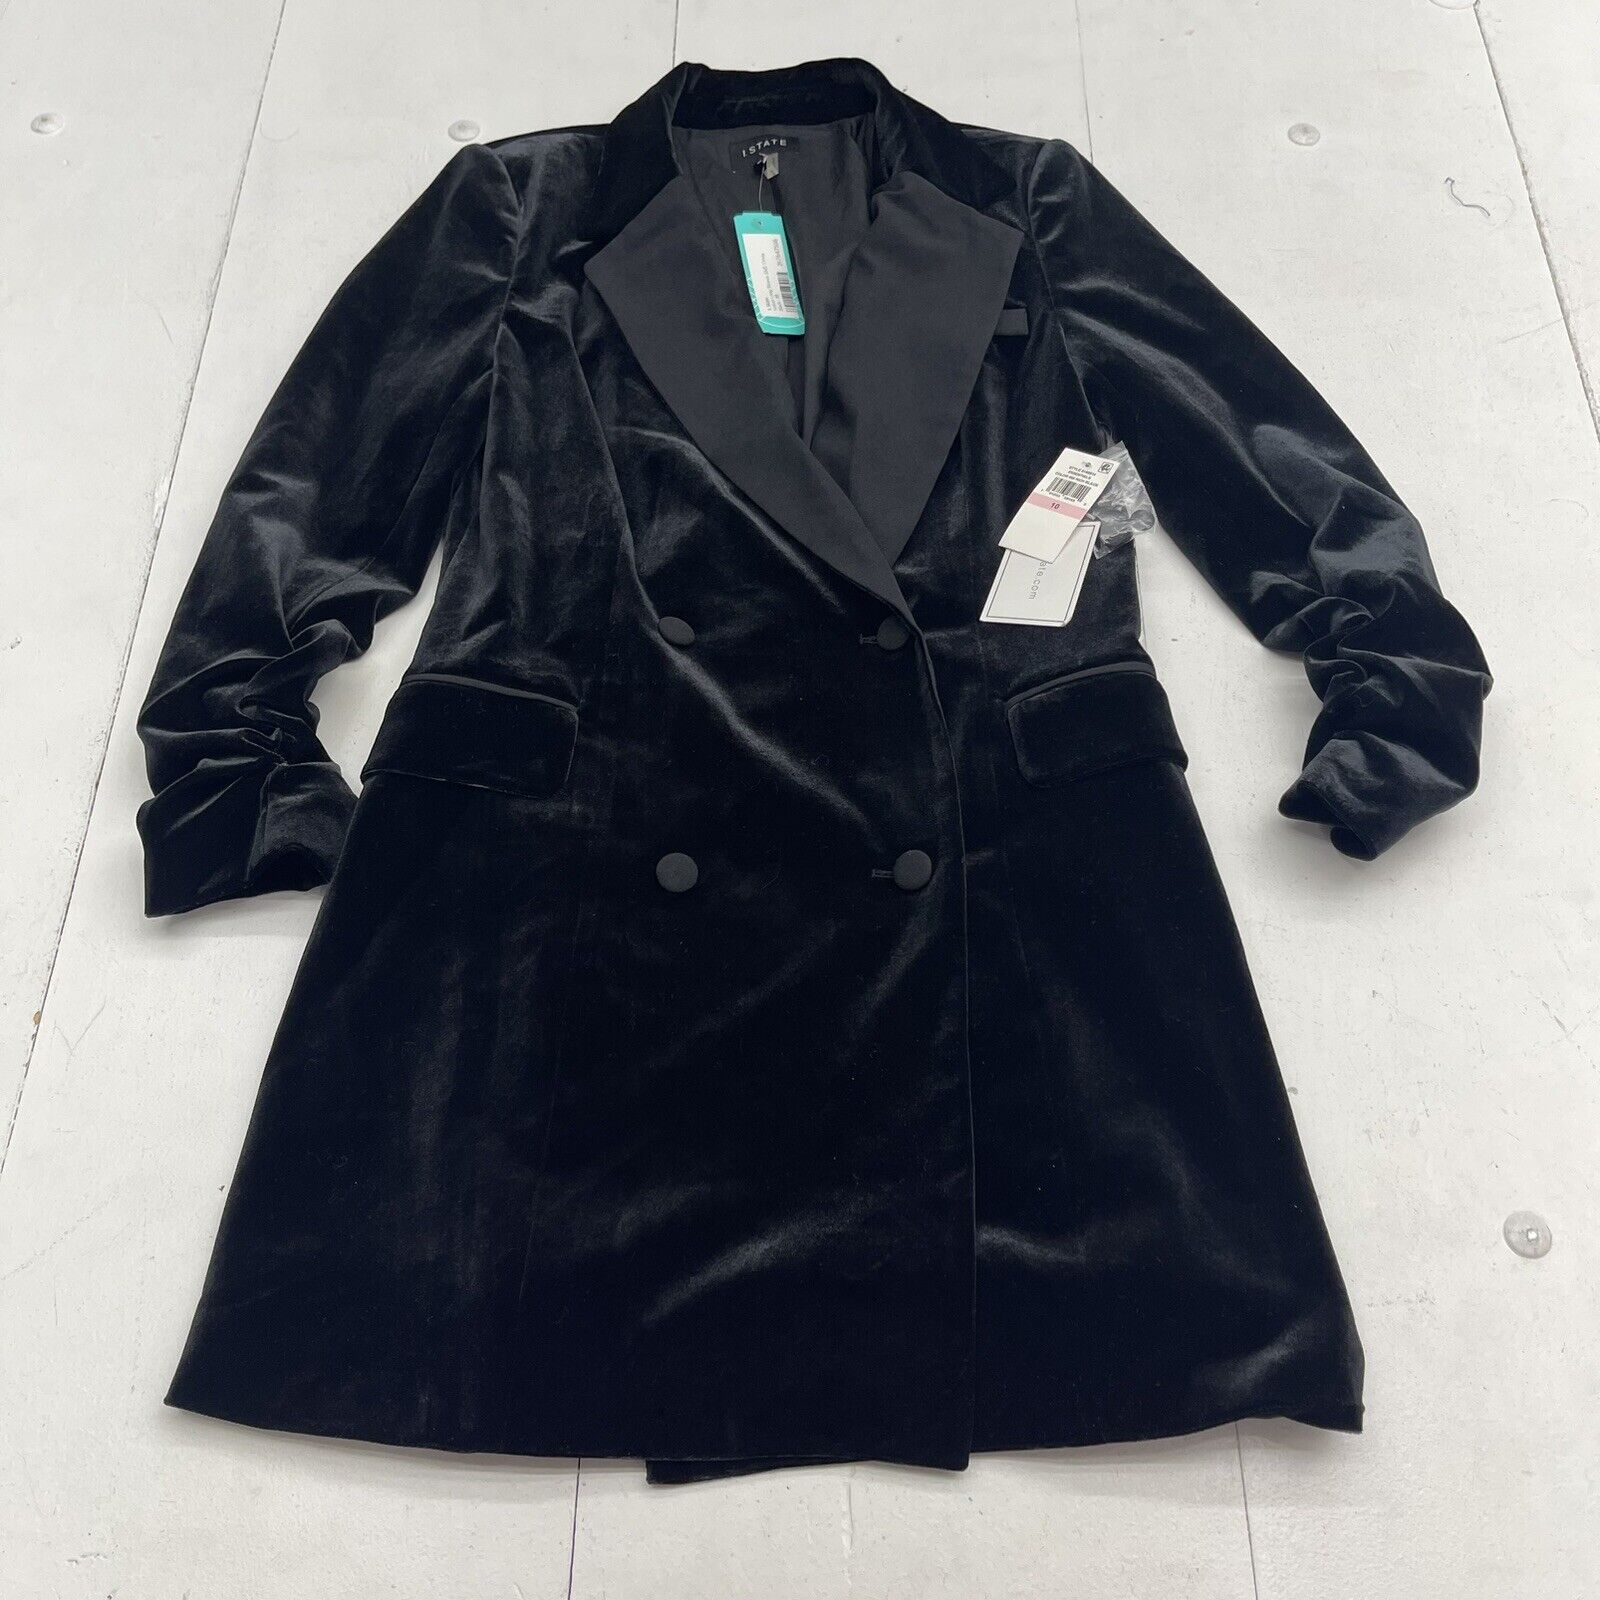 1 State Ruched Black Velvet Blazer Dress Women’s 10 New $139